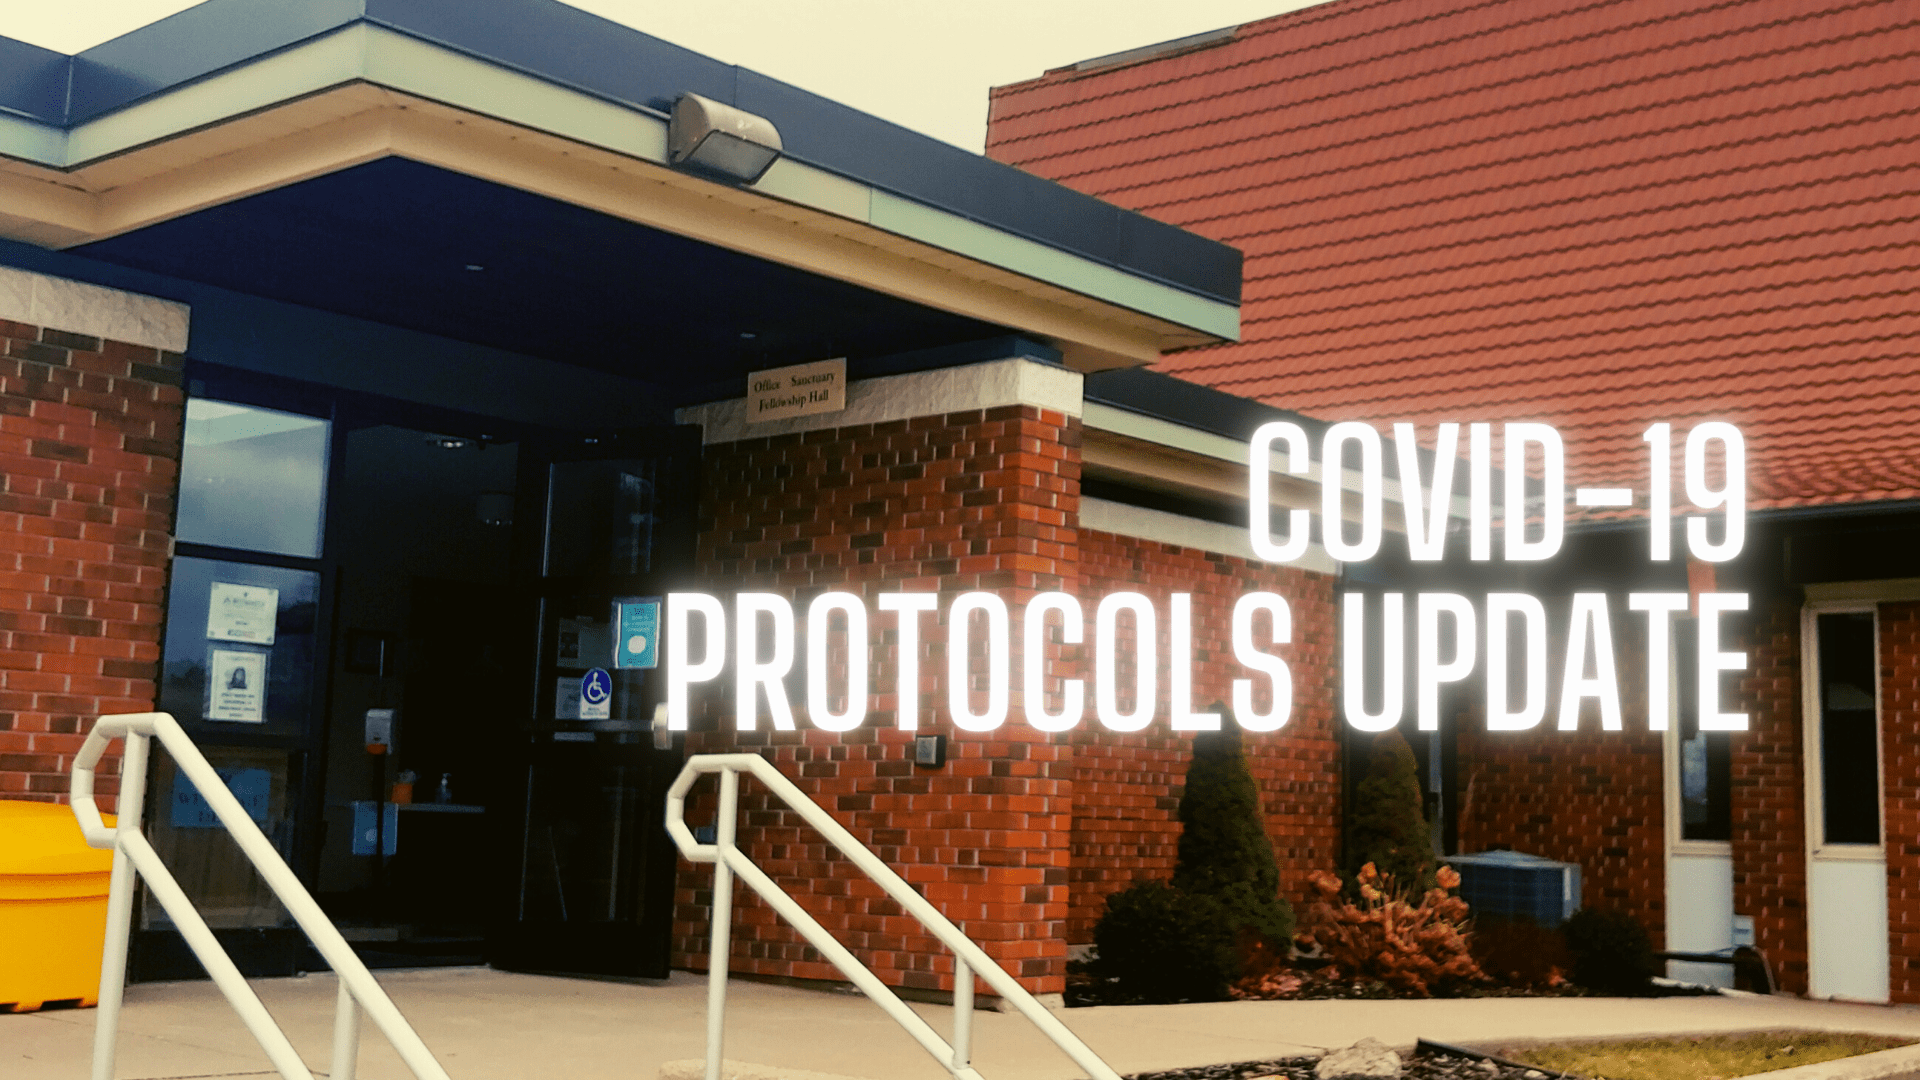 Covid-19 Protocols Update